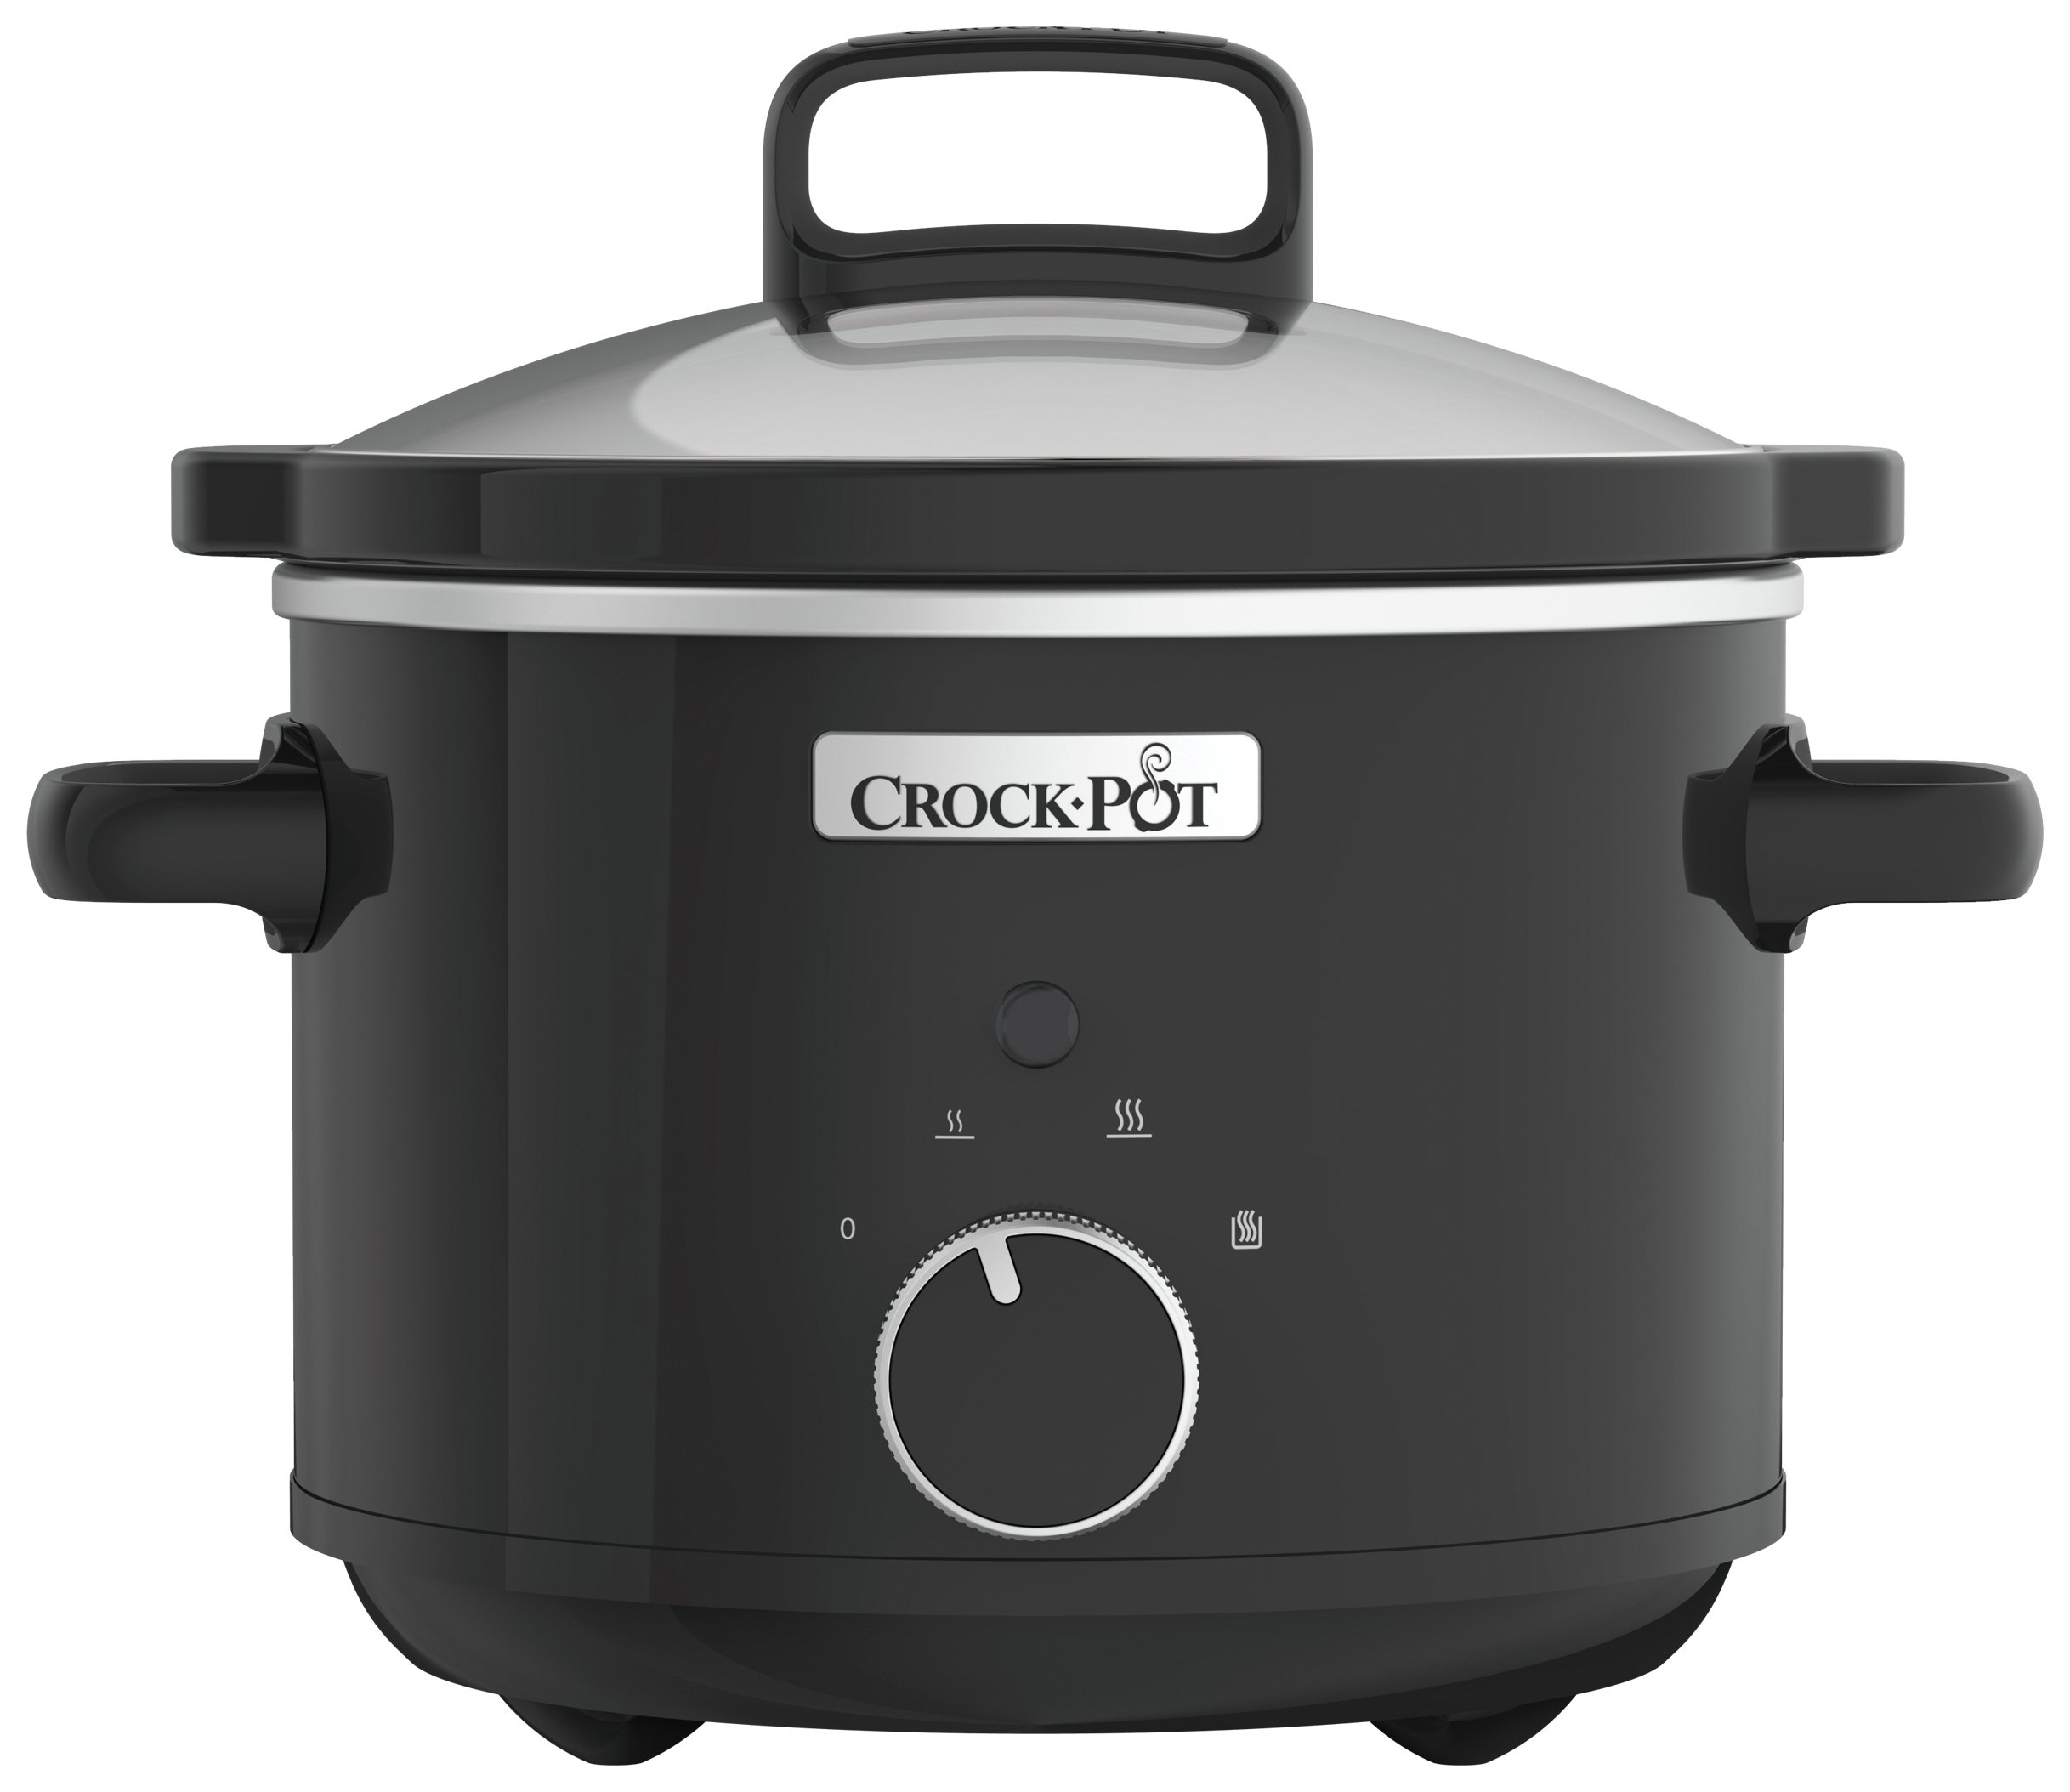 Crock-Pot 2.4L Slow Cooker review